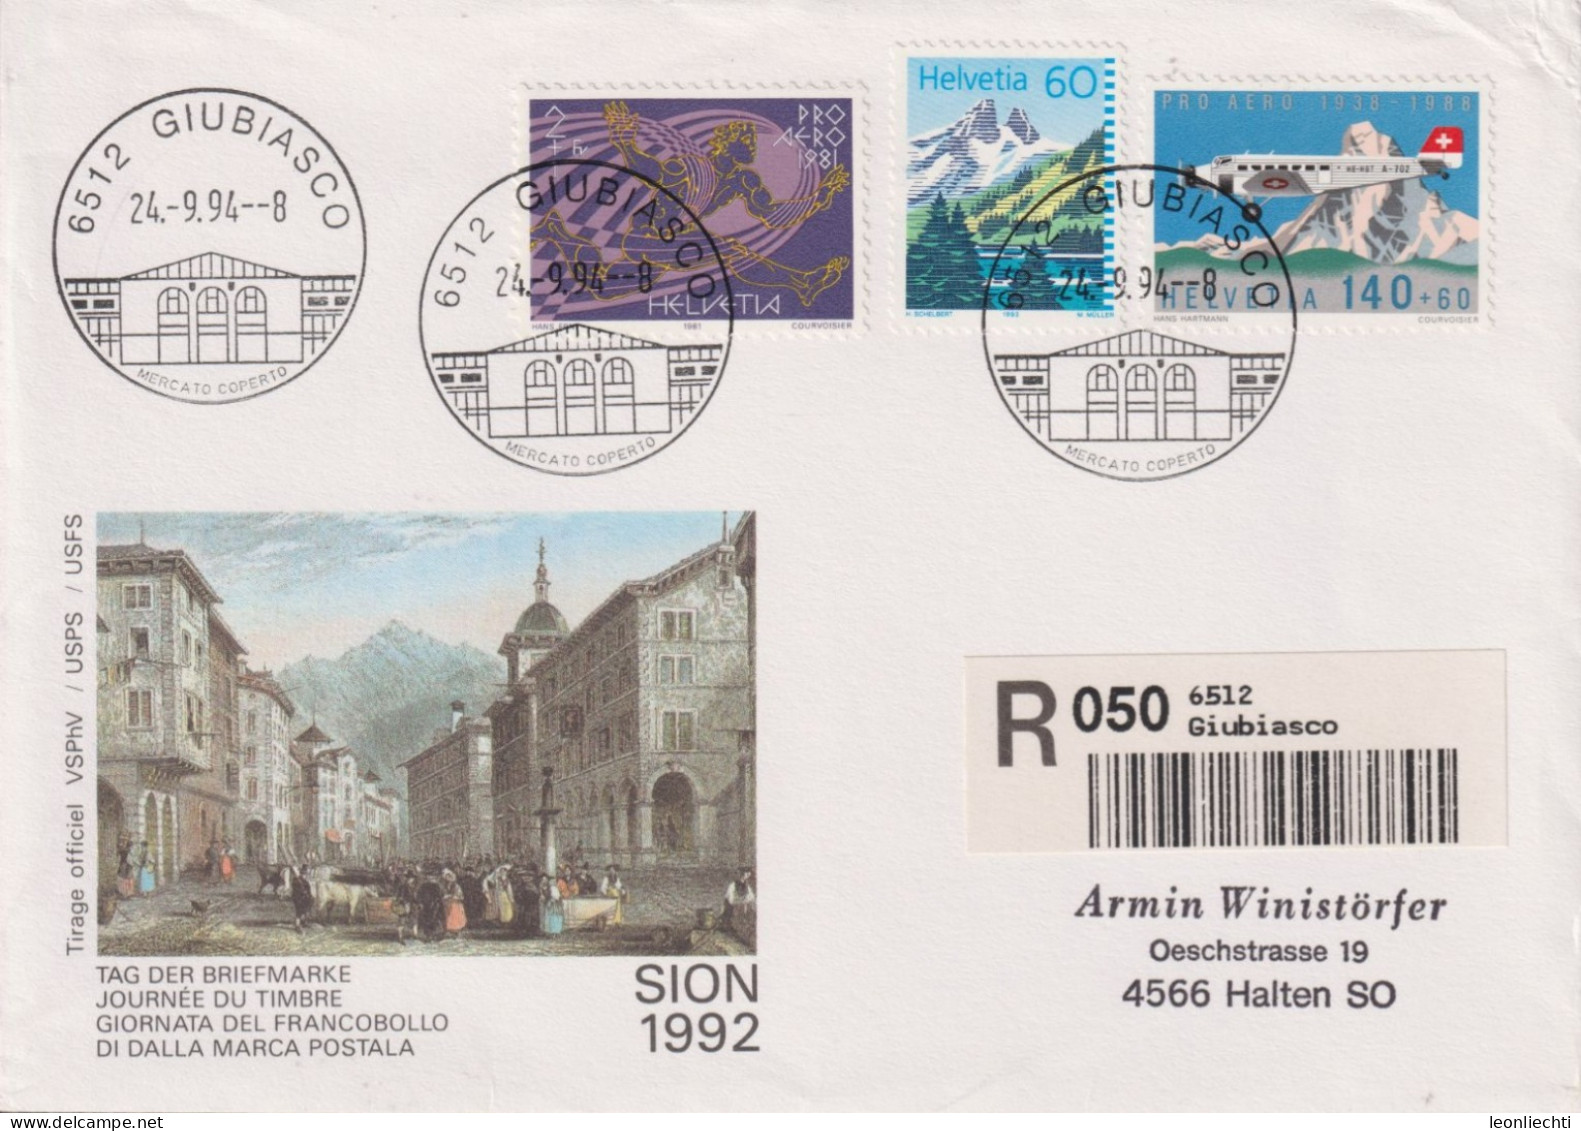 1994 Schweiz Tag Der Briefmarke Sion, Zum:CH F49+W48+837, Mi:CH 1369+1196+1489, ° 6512 GIUBIASSCO - Briefe U. Dokumente